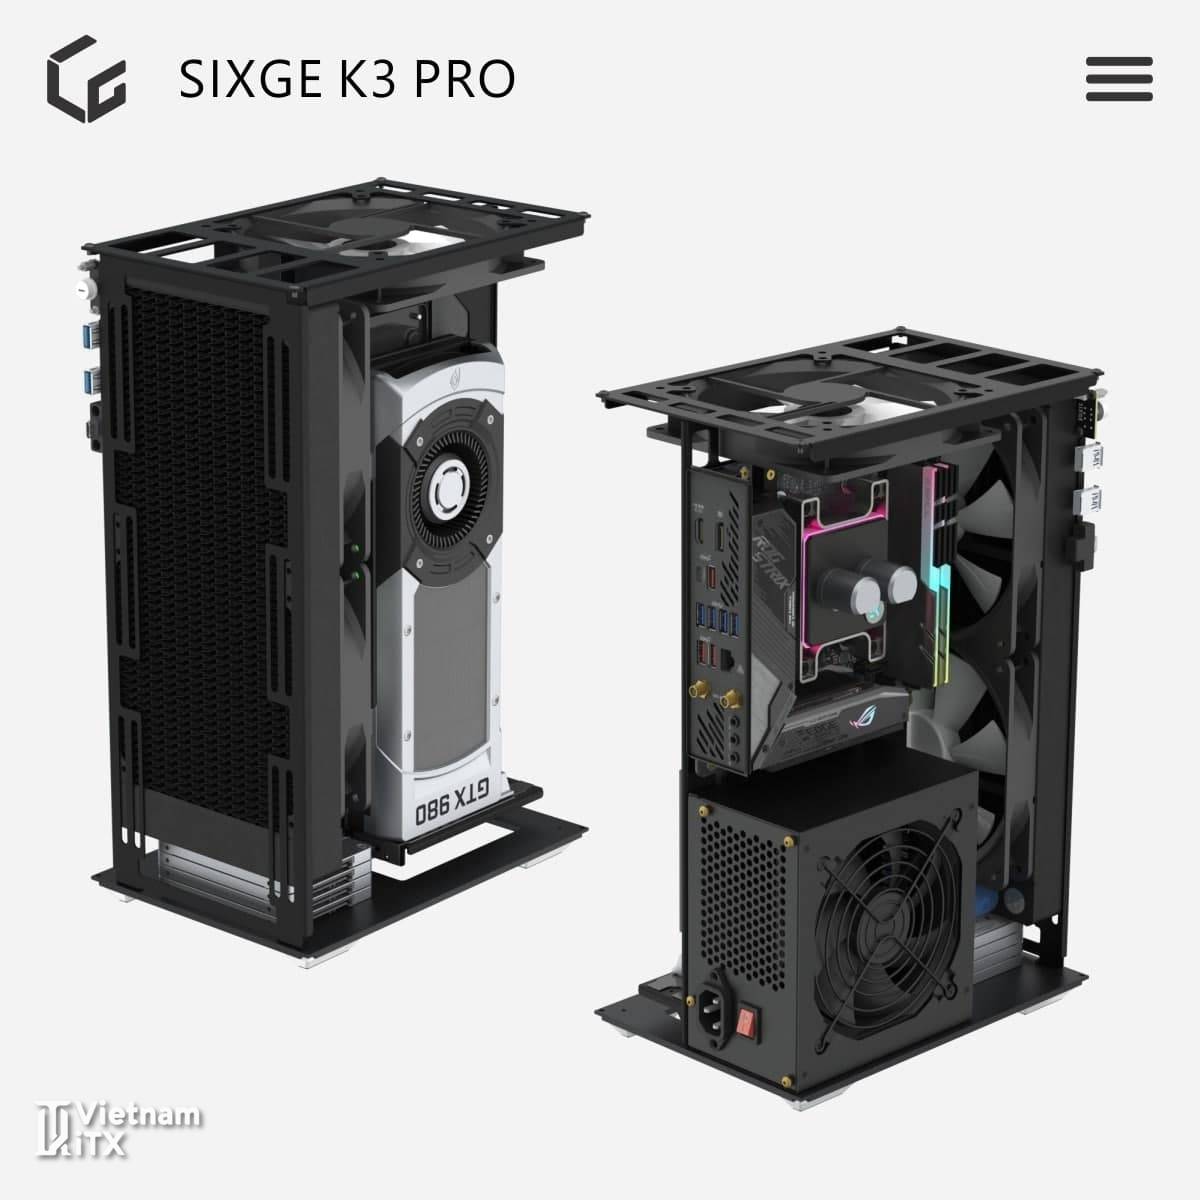 SIXGE K3 Pro itx xây dựng dàn máy mini pc hoàn hảo nhất 2022 (2).jpg